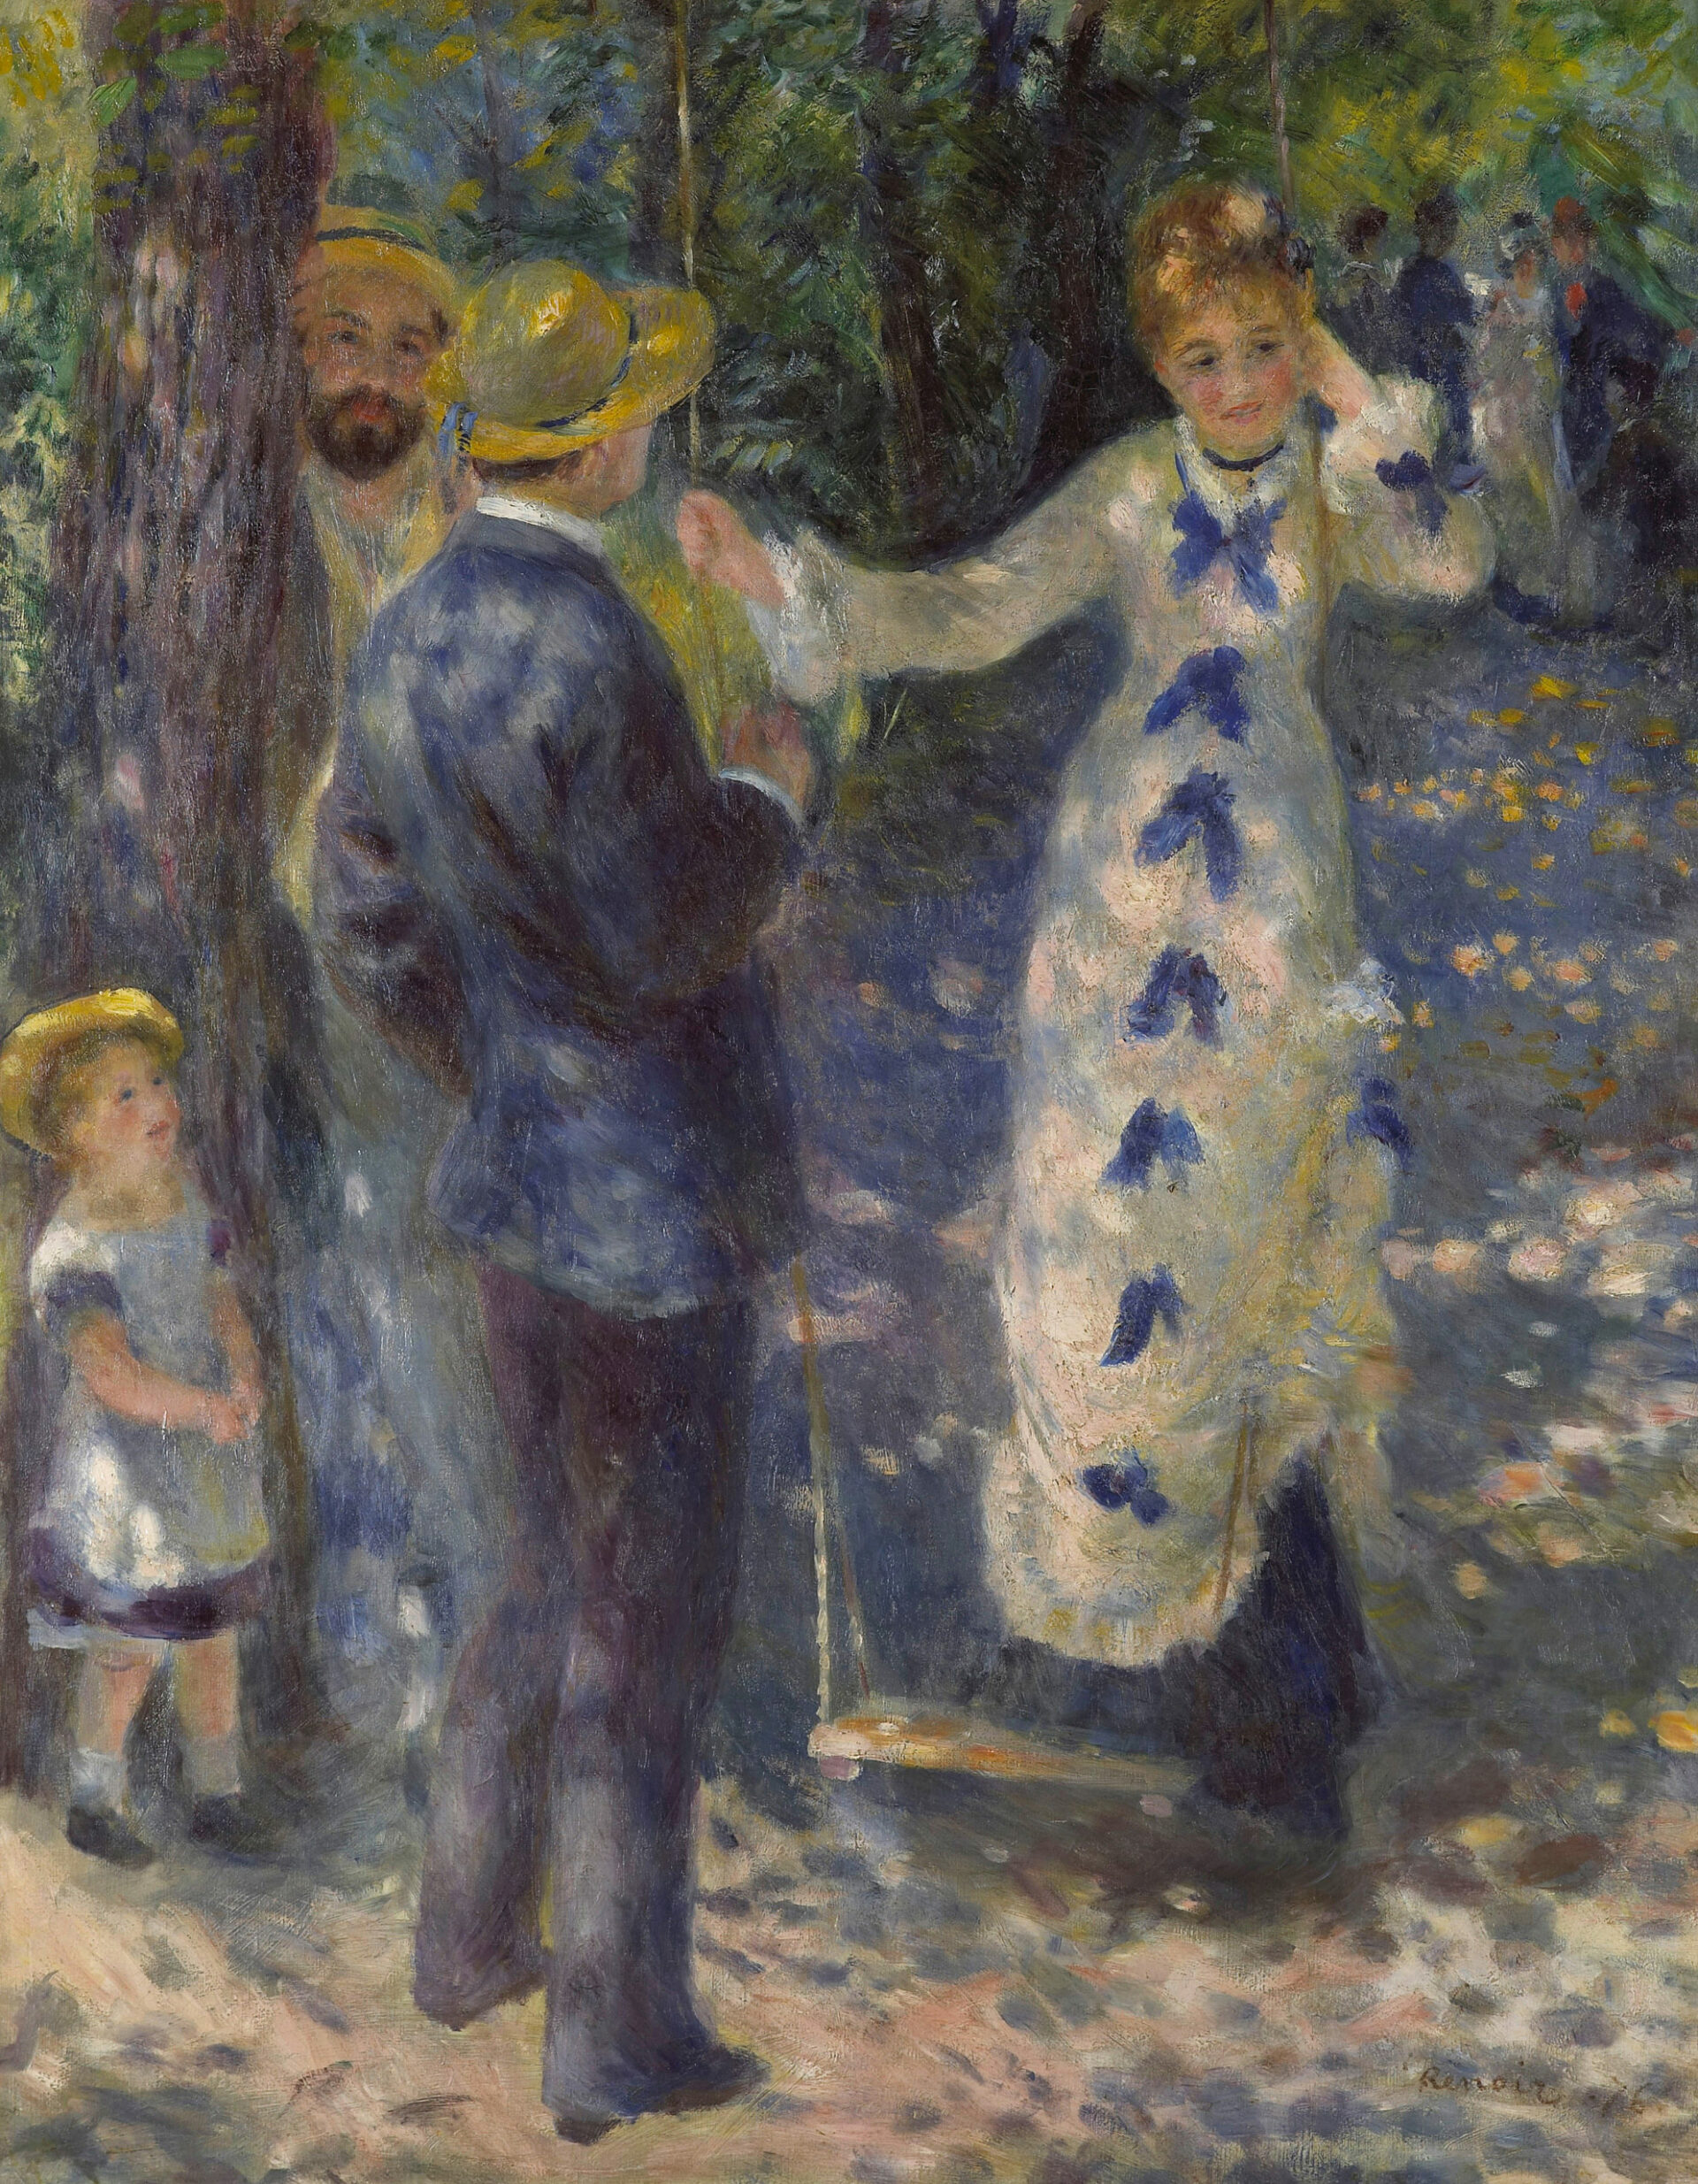 Pierre-Auguste Renoir, Die Schaukel (La Balançoire), 1876, Musée d’Orsay, Paris, Legs Gustave Caillebotte, 1894, bpk  RMN – Grand Palais  Patrice Schmidt